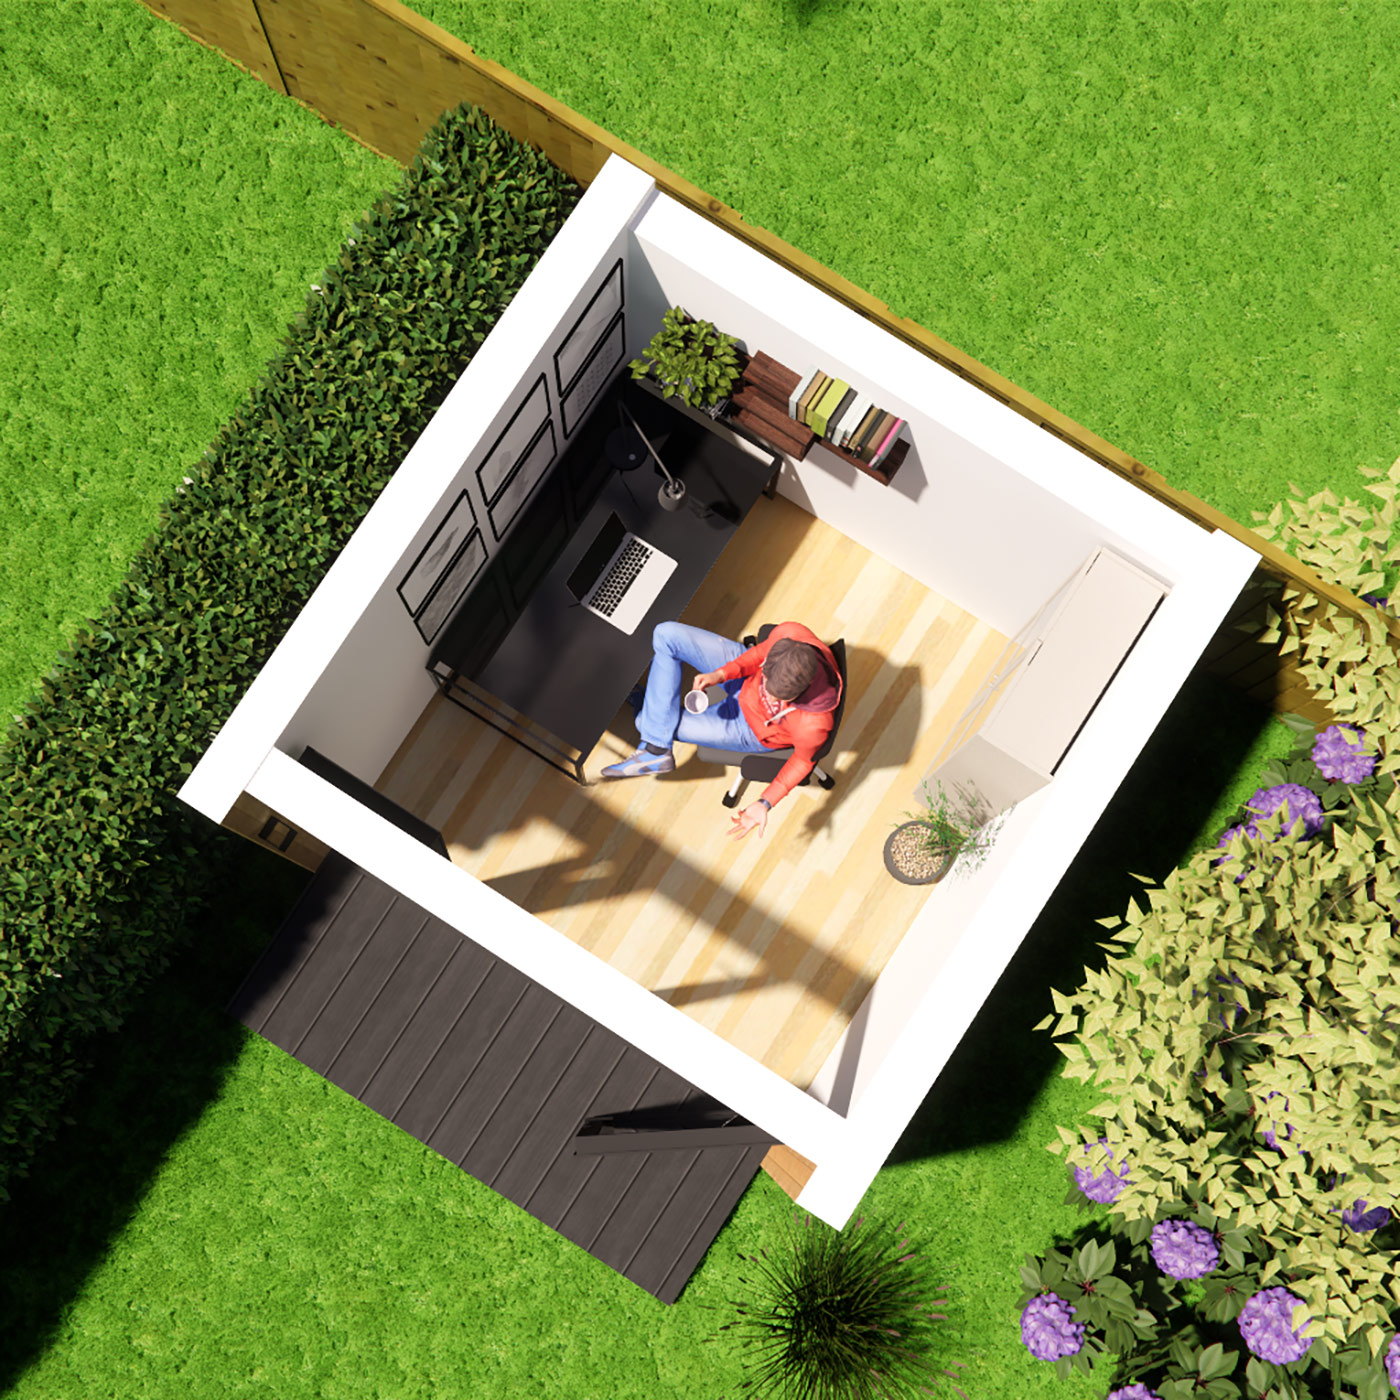 Floorplan visualisation of 2.6m by 2.6m garden office